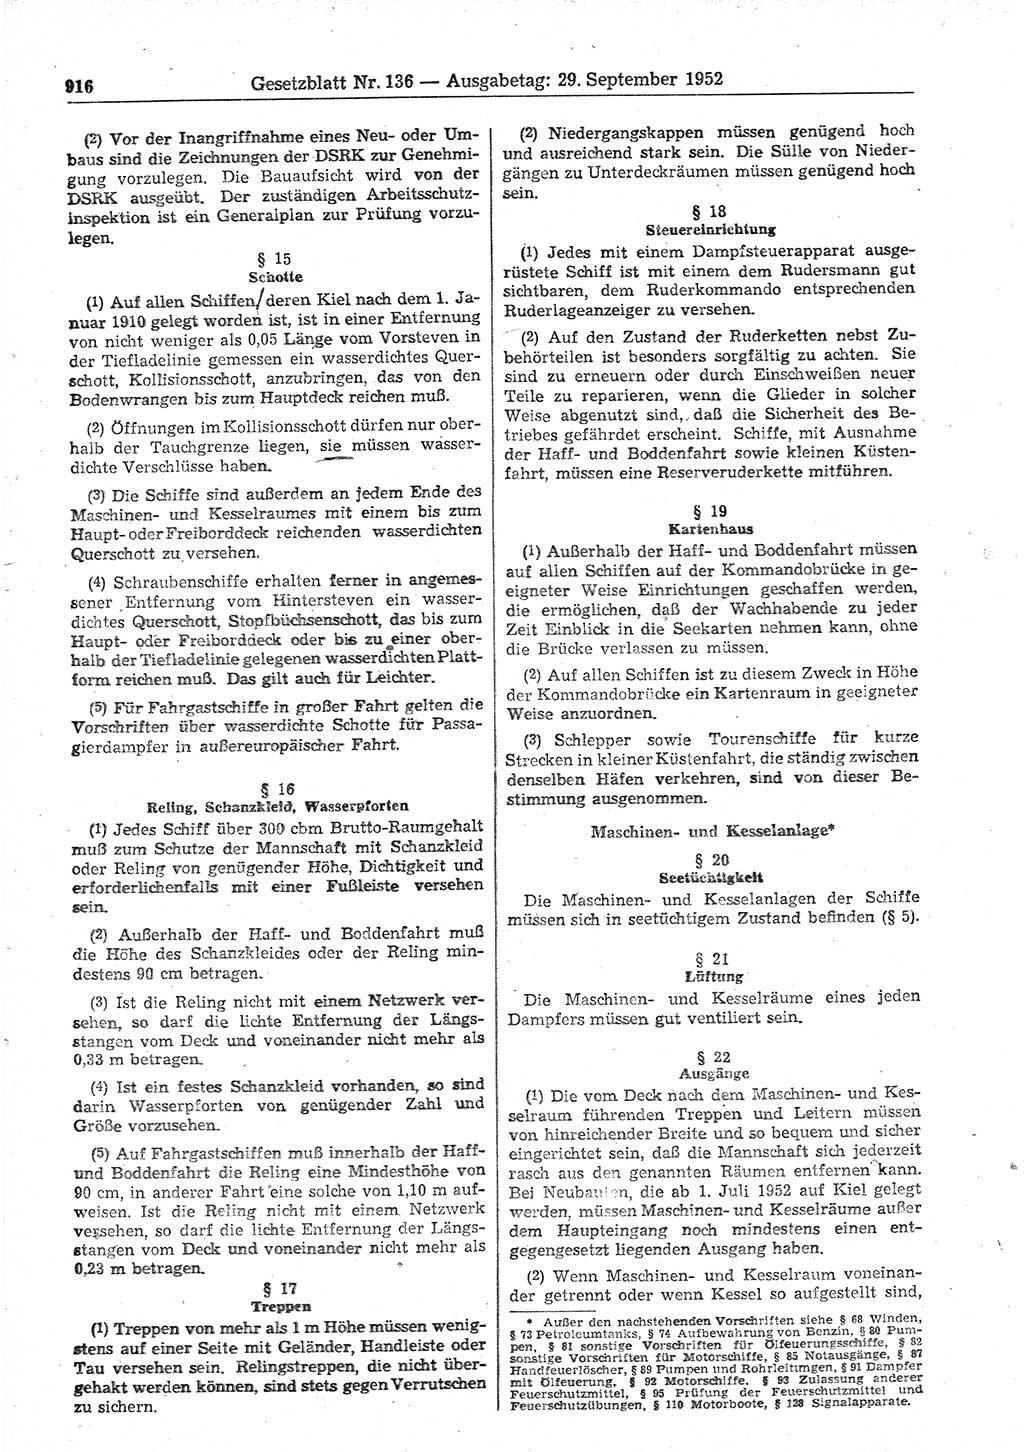 Gesetzblatt (GBl.) der Deutschen Demokratischen Republik (DDR) 1952, Seite 916 (GBl. DDR 1952, S. 916)